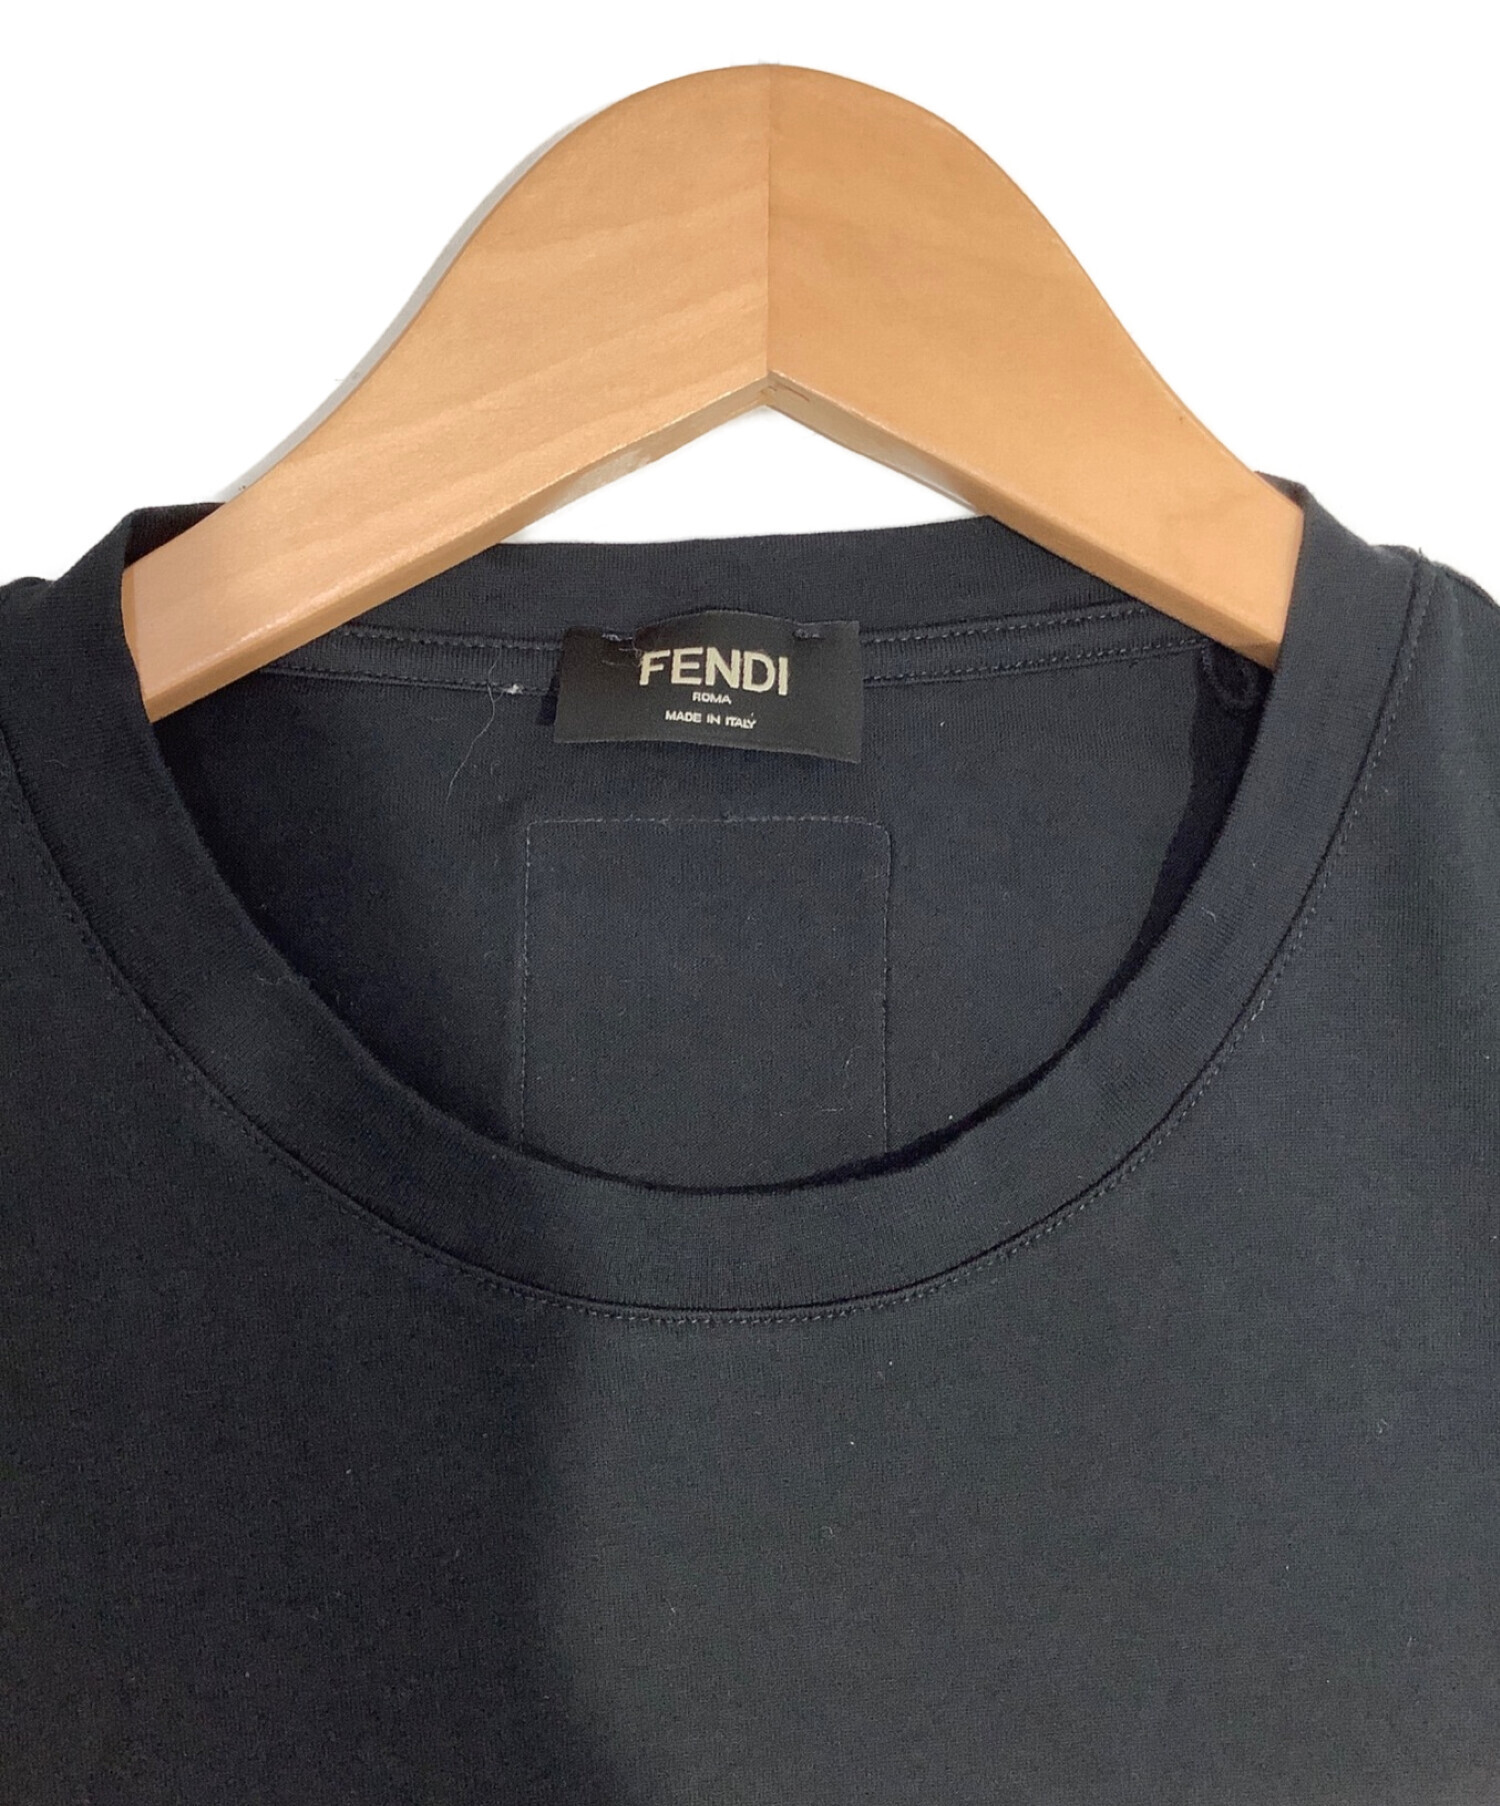 中古・古着通販】FENDI (フェンディ) クルーネックTシャツ ブラック 